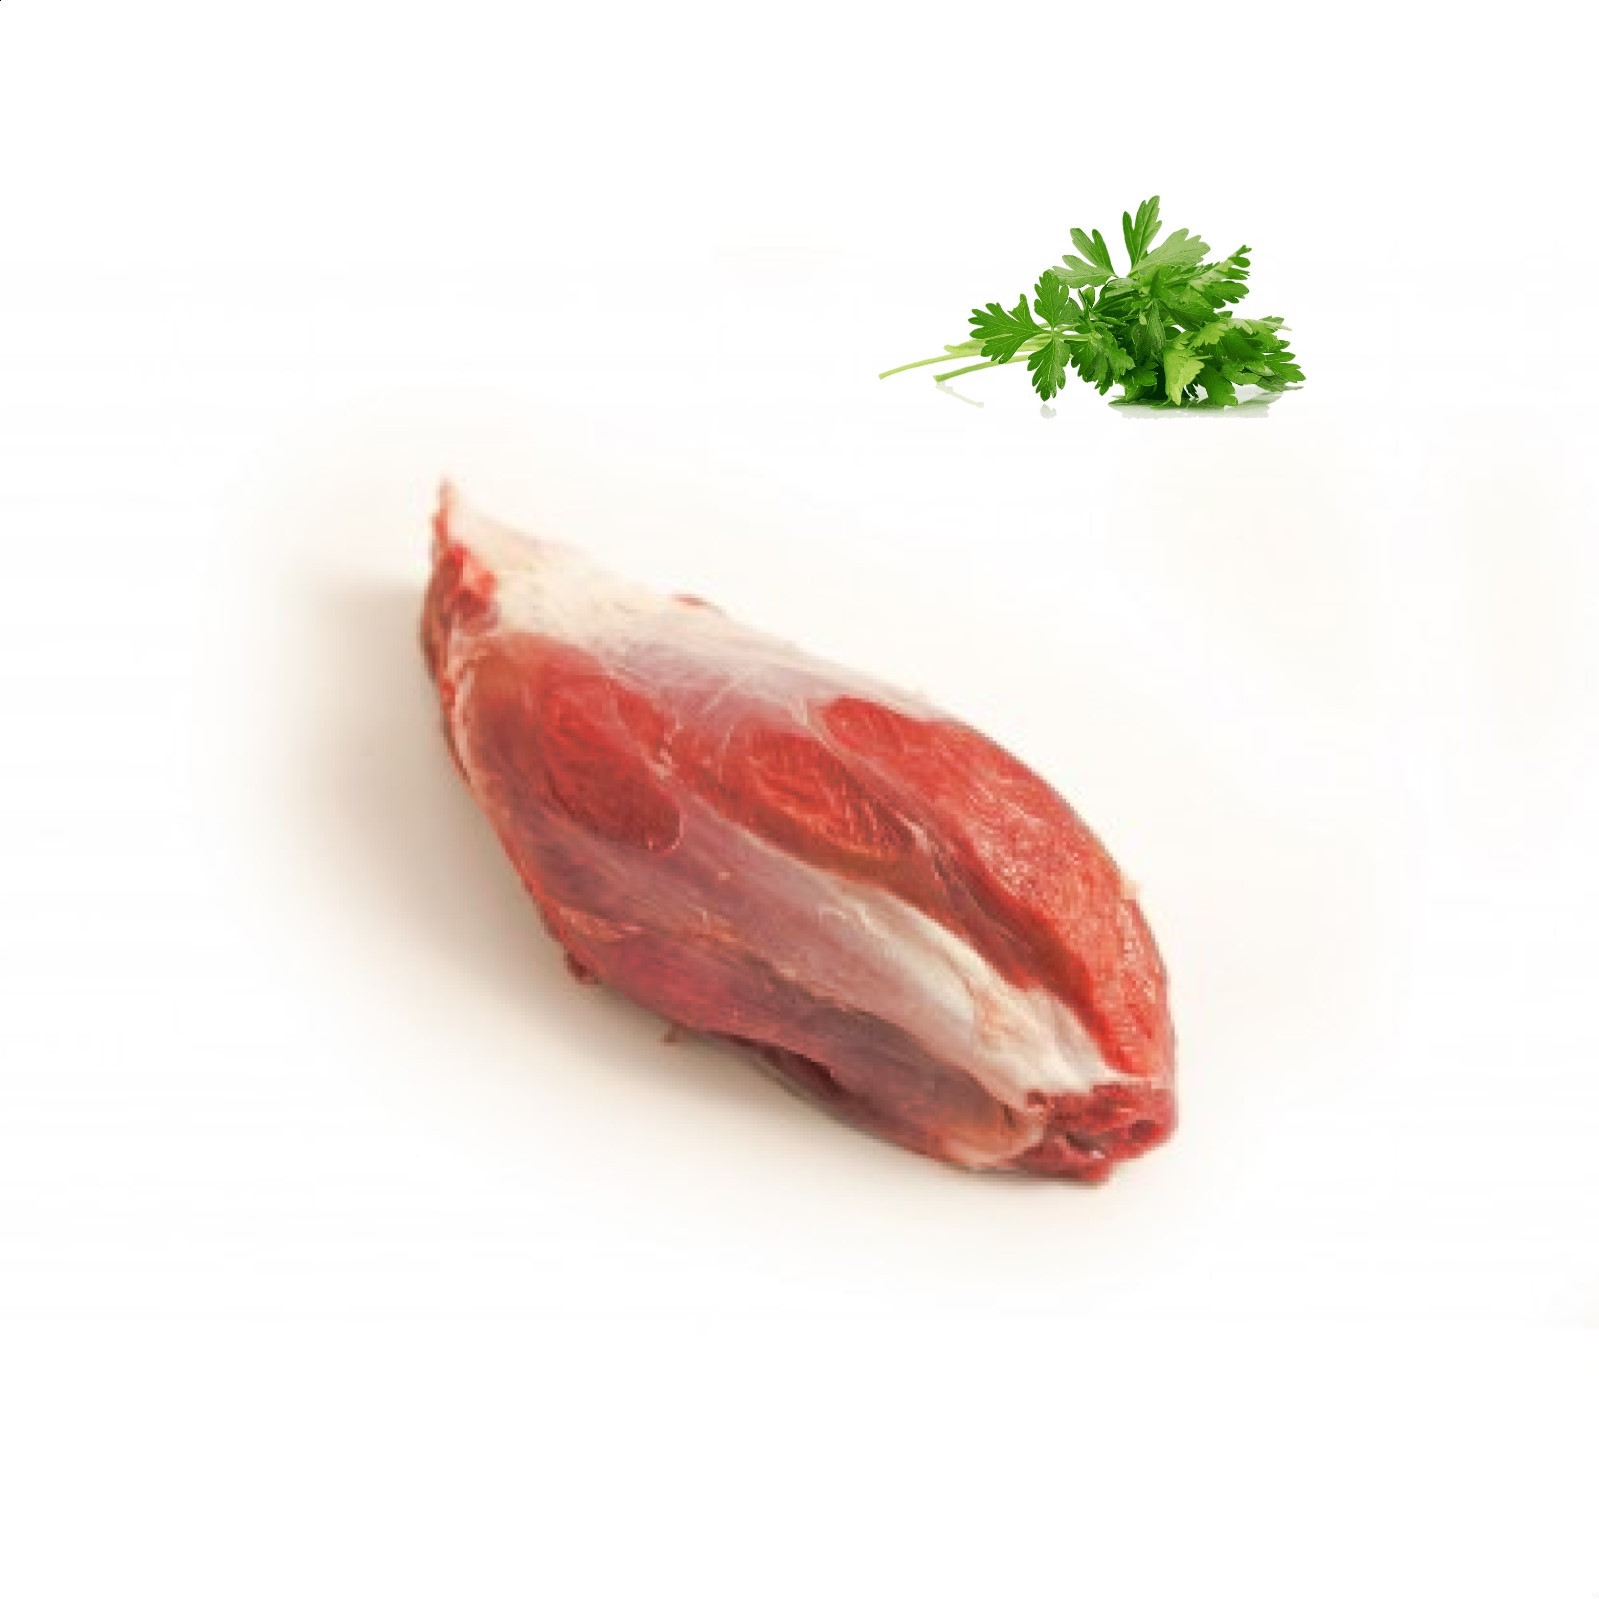 Casa Gutier - Lote degustación premium - carne de ternera 9.5Kg